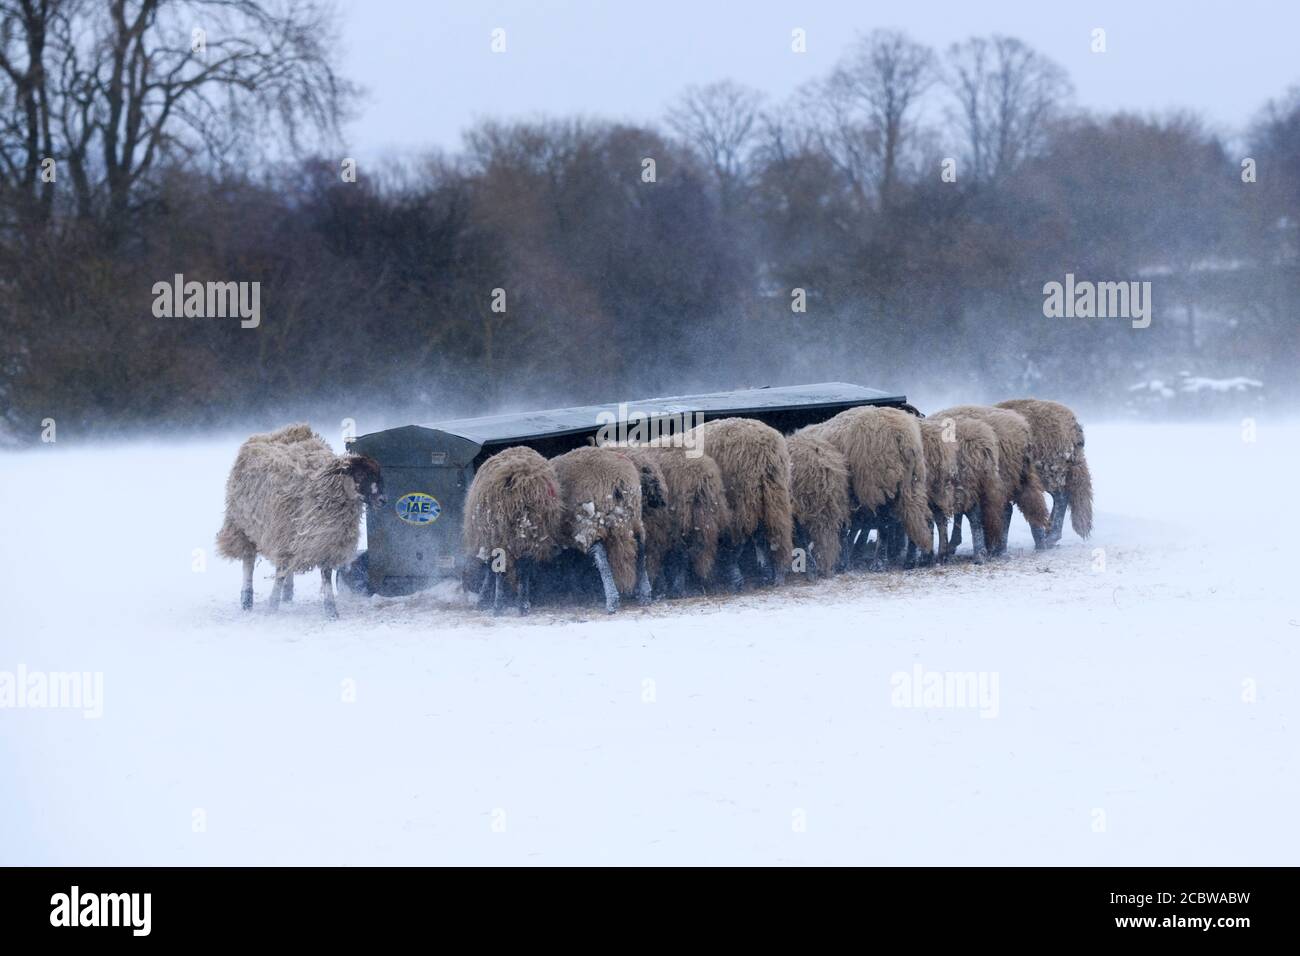 Kalten verschneiten Wintertag & hungrige Schafe im Schnee stehen (ausgesetzt windgepeitschten Feld) gesammelt rund Heuhaufen Essen Heu - Ilkley Moor, Yorkshire England Großbritannien. Stockfoto